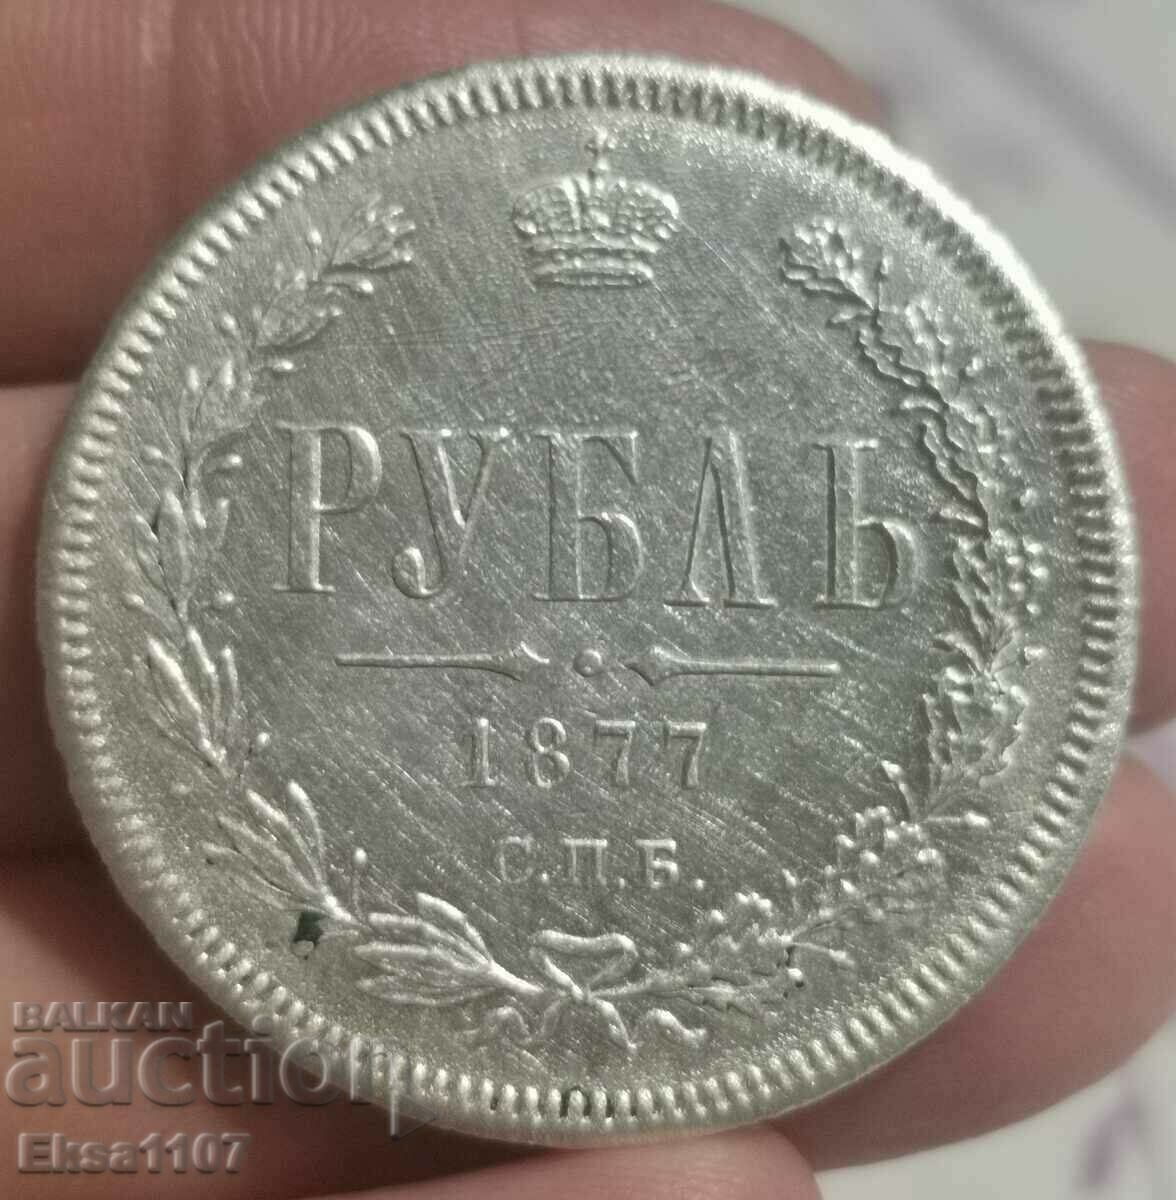 1 Ruble 1877 Tsarist Russia 100% Authentic